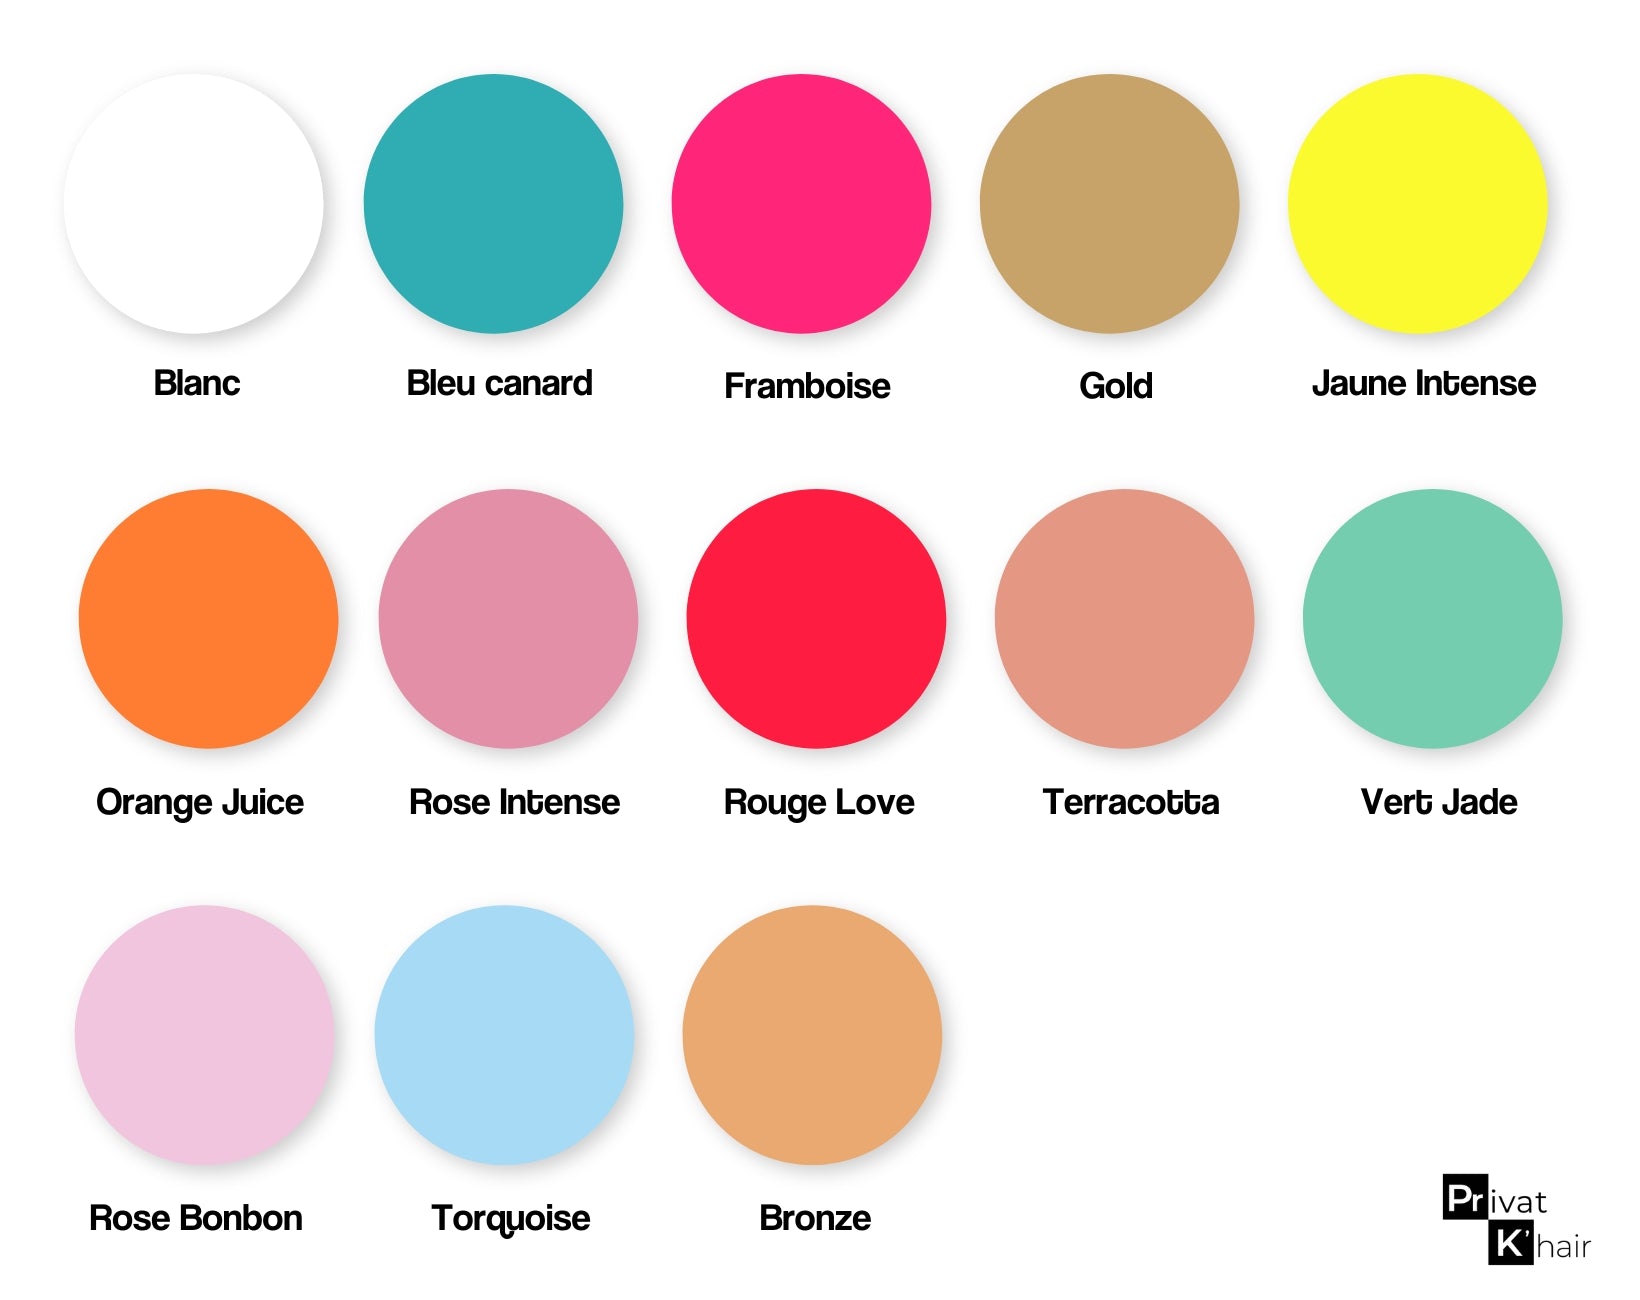 Palette de couleurs personnalisées pour les étiquettes personnalisées Privat K'hair